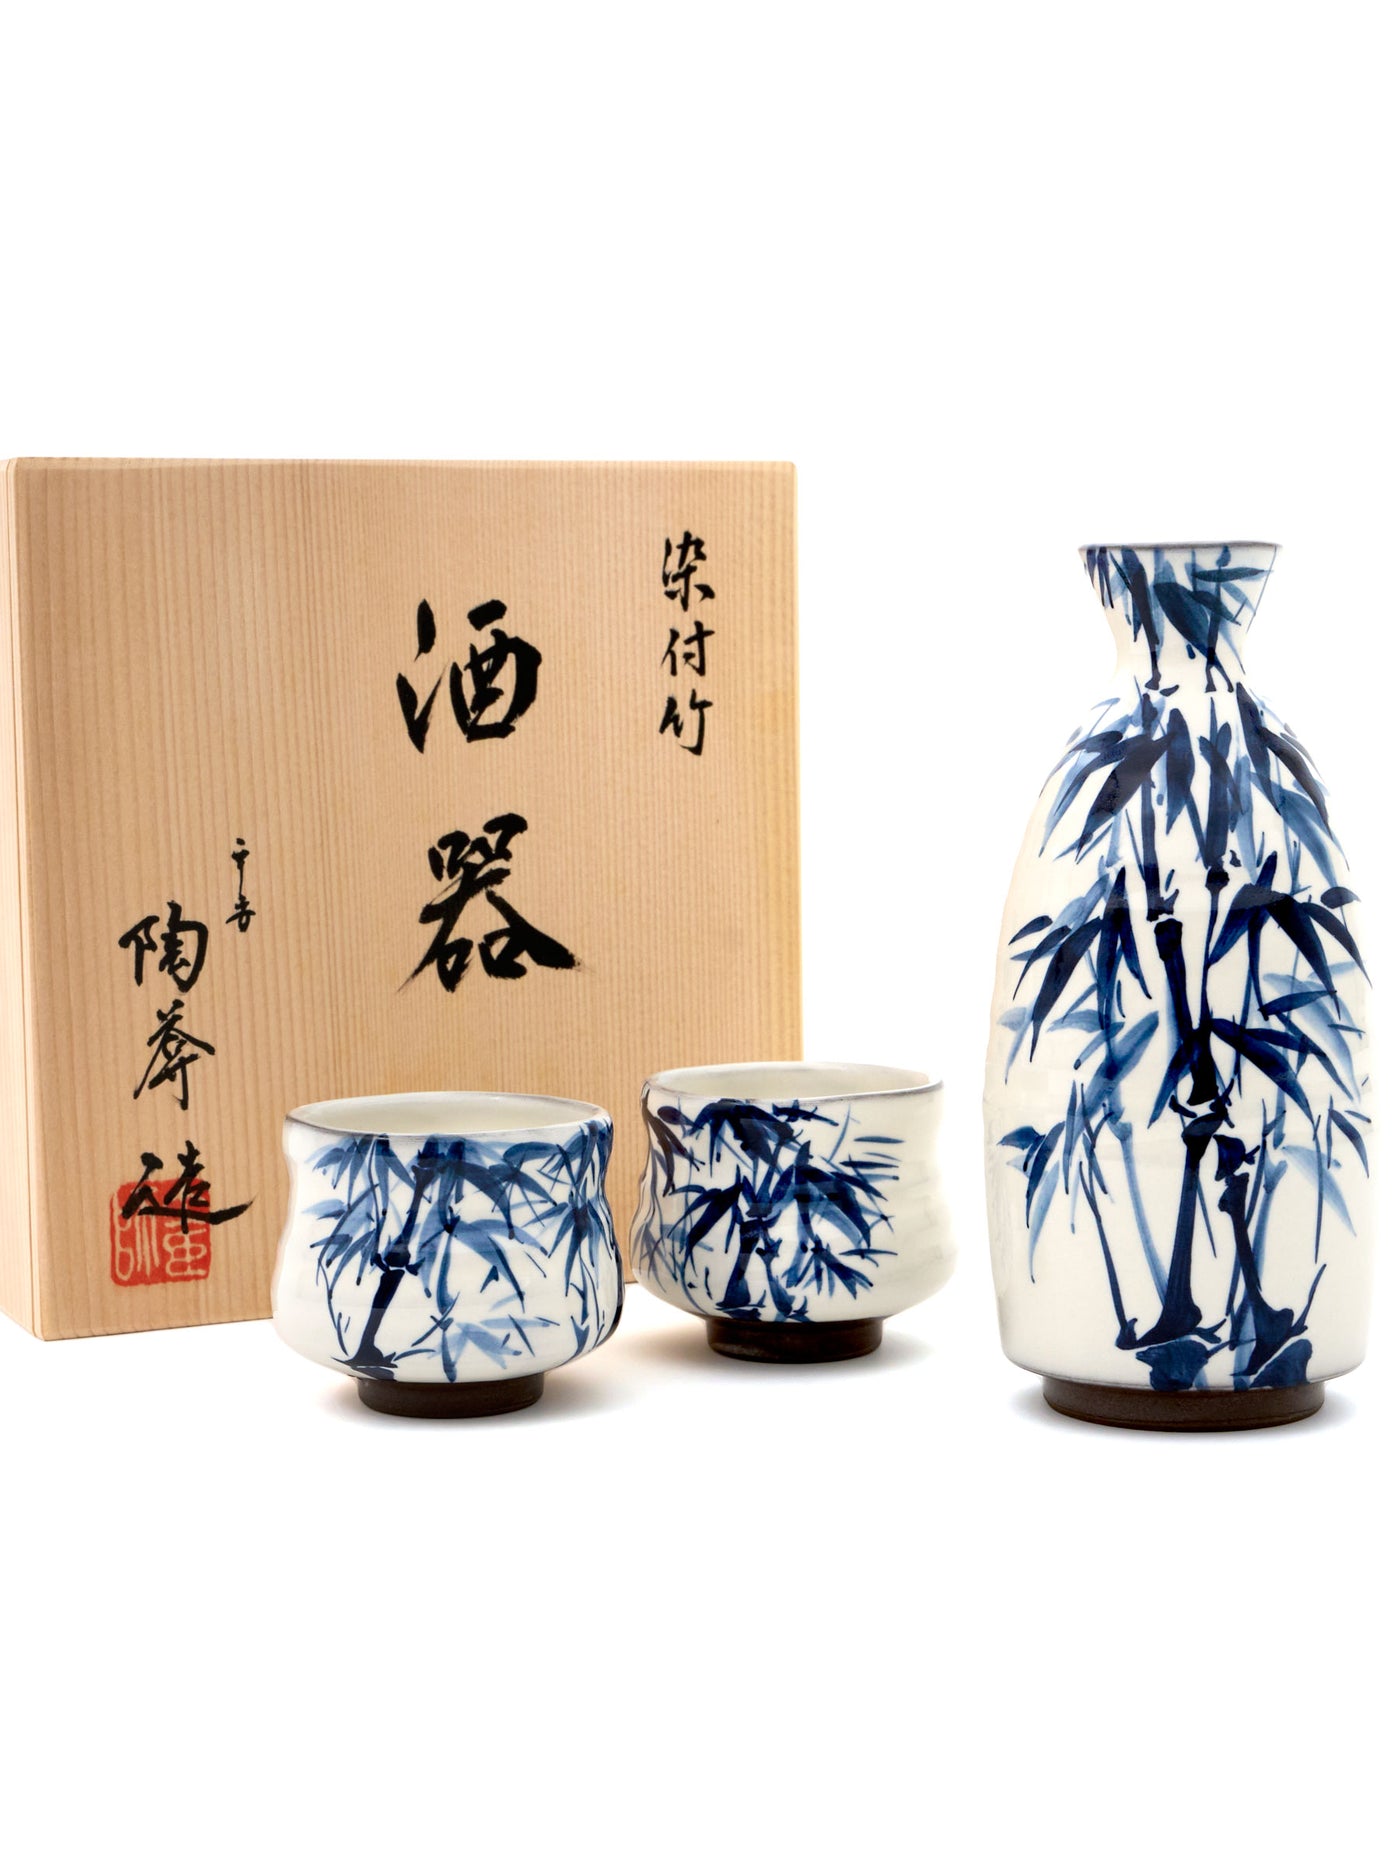 Bamboo Kyoto Ware Japanese Sake Set by Touan